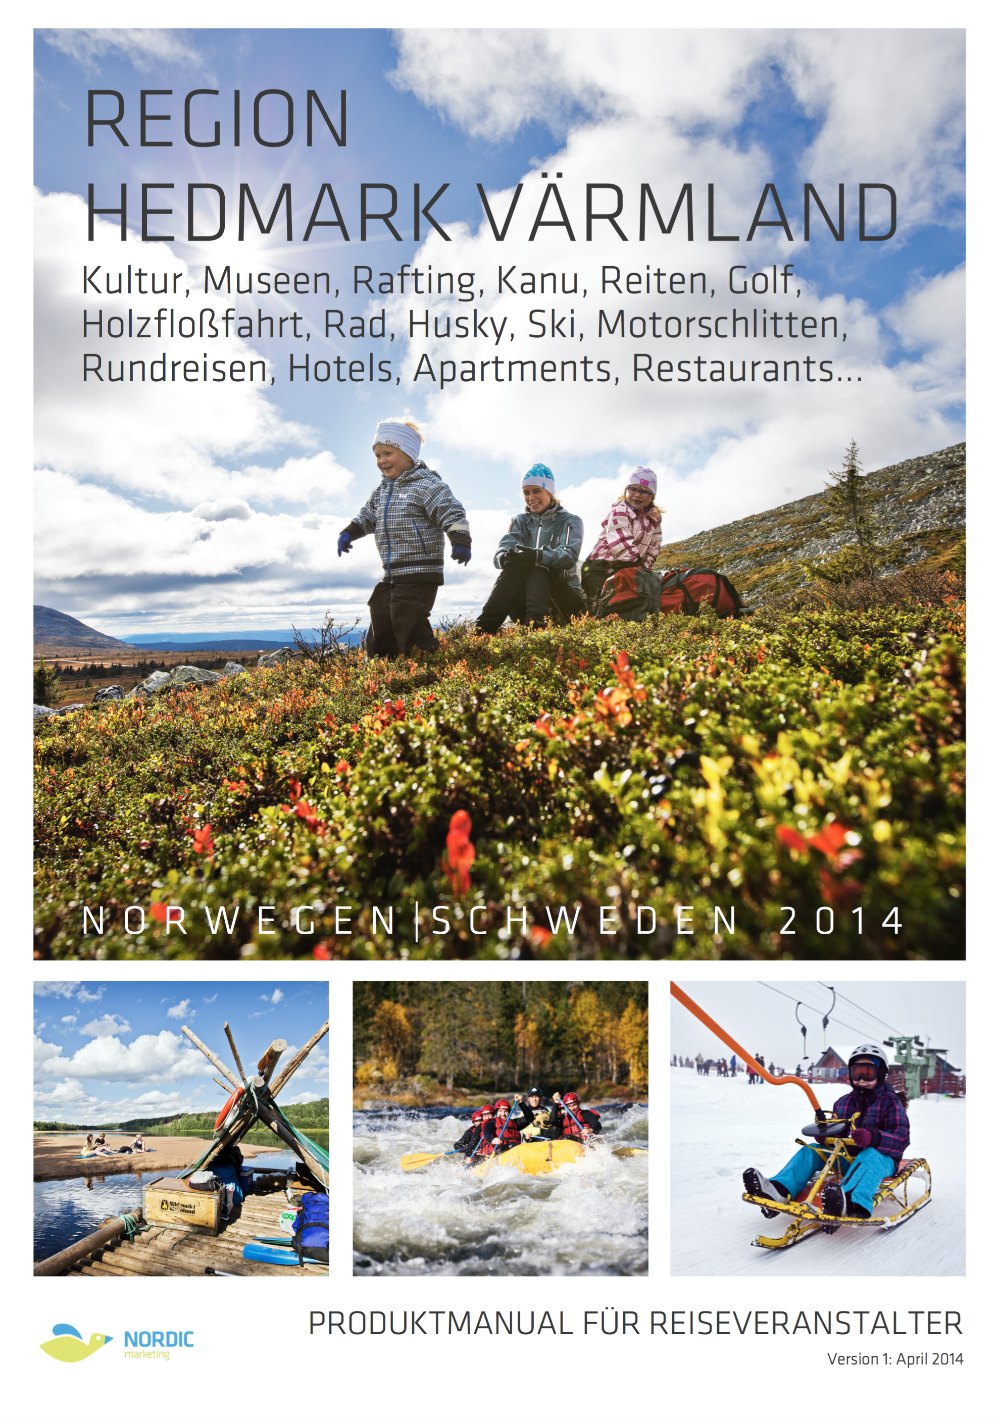 Region Hedmark Värmland Produktmanual Cover